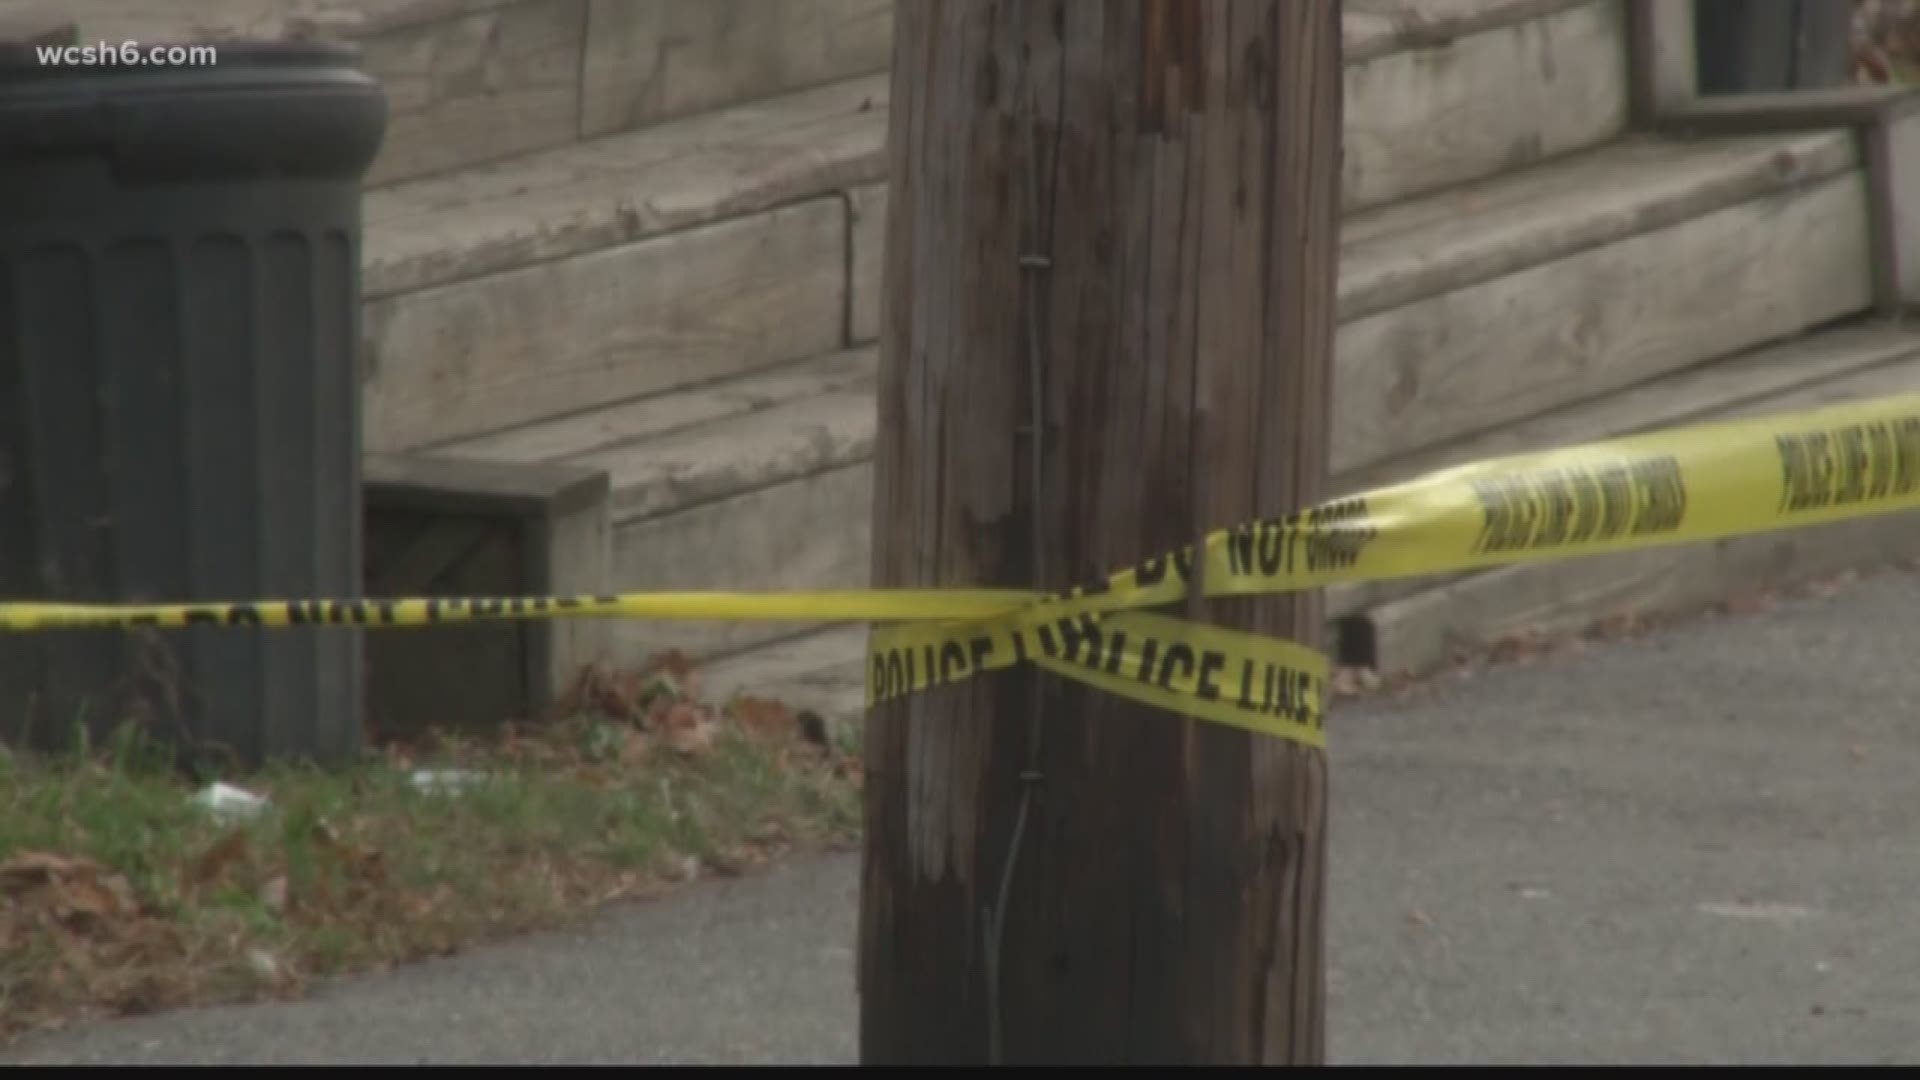 Jury Selection Begins In Case Of Fatal Shooting In Bangor